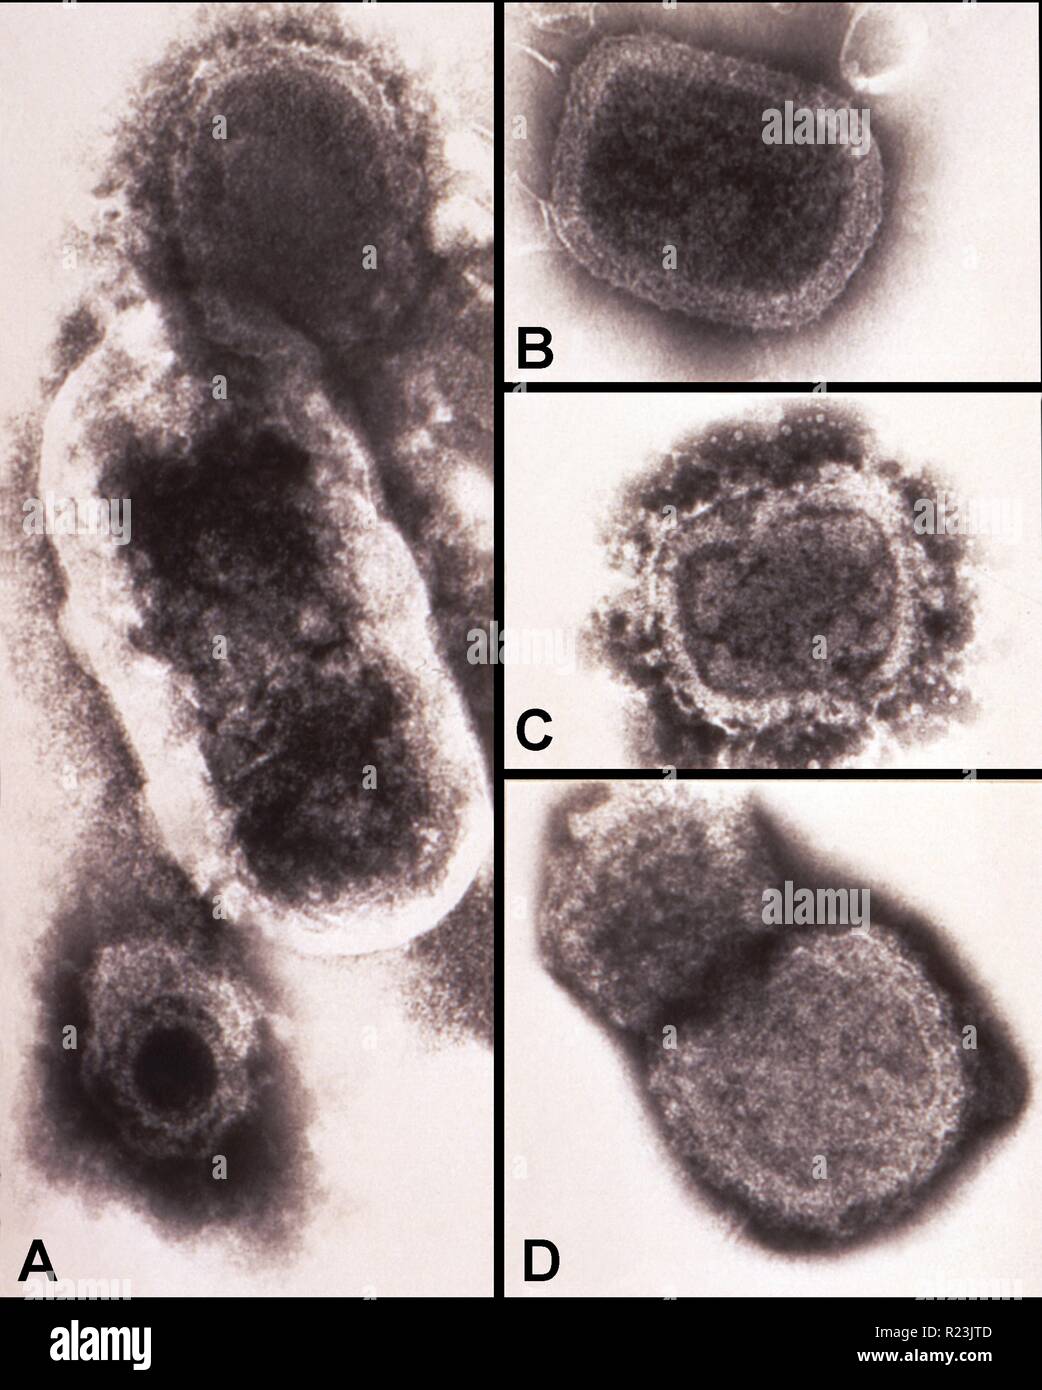 Hohe Vergrößerung von 150.000 X, negativ gefärbten Transmission Electron Micrograph (TEM) Einige der Ultrastruktur Morphologie durch eine Reihe von verschiedenen Mikroorganismen ausgestellt aufschlussreich. Verkleidung "A" stellt einen Composite Schliffbild, zum Vergleich der Größe Unterschied zwischen einem Poxvirus an der Spitze, ein bazillus, der in der Mitte und einem Herpesvirus an der Unterseite. Panels 'B', 'C' und 'D' sind Systeme, die die fortlaufende Degeneration des variola Virus patricles. Stockfoto